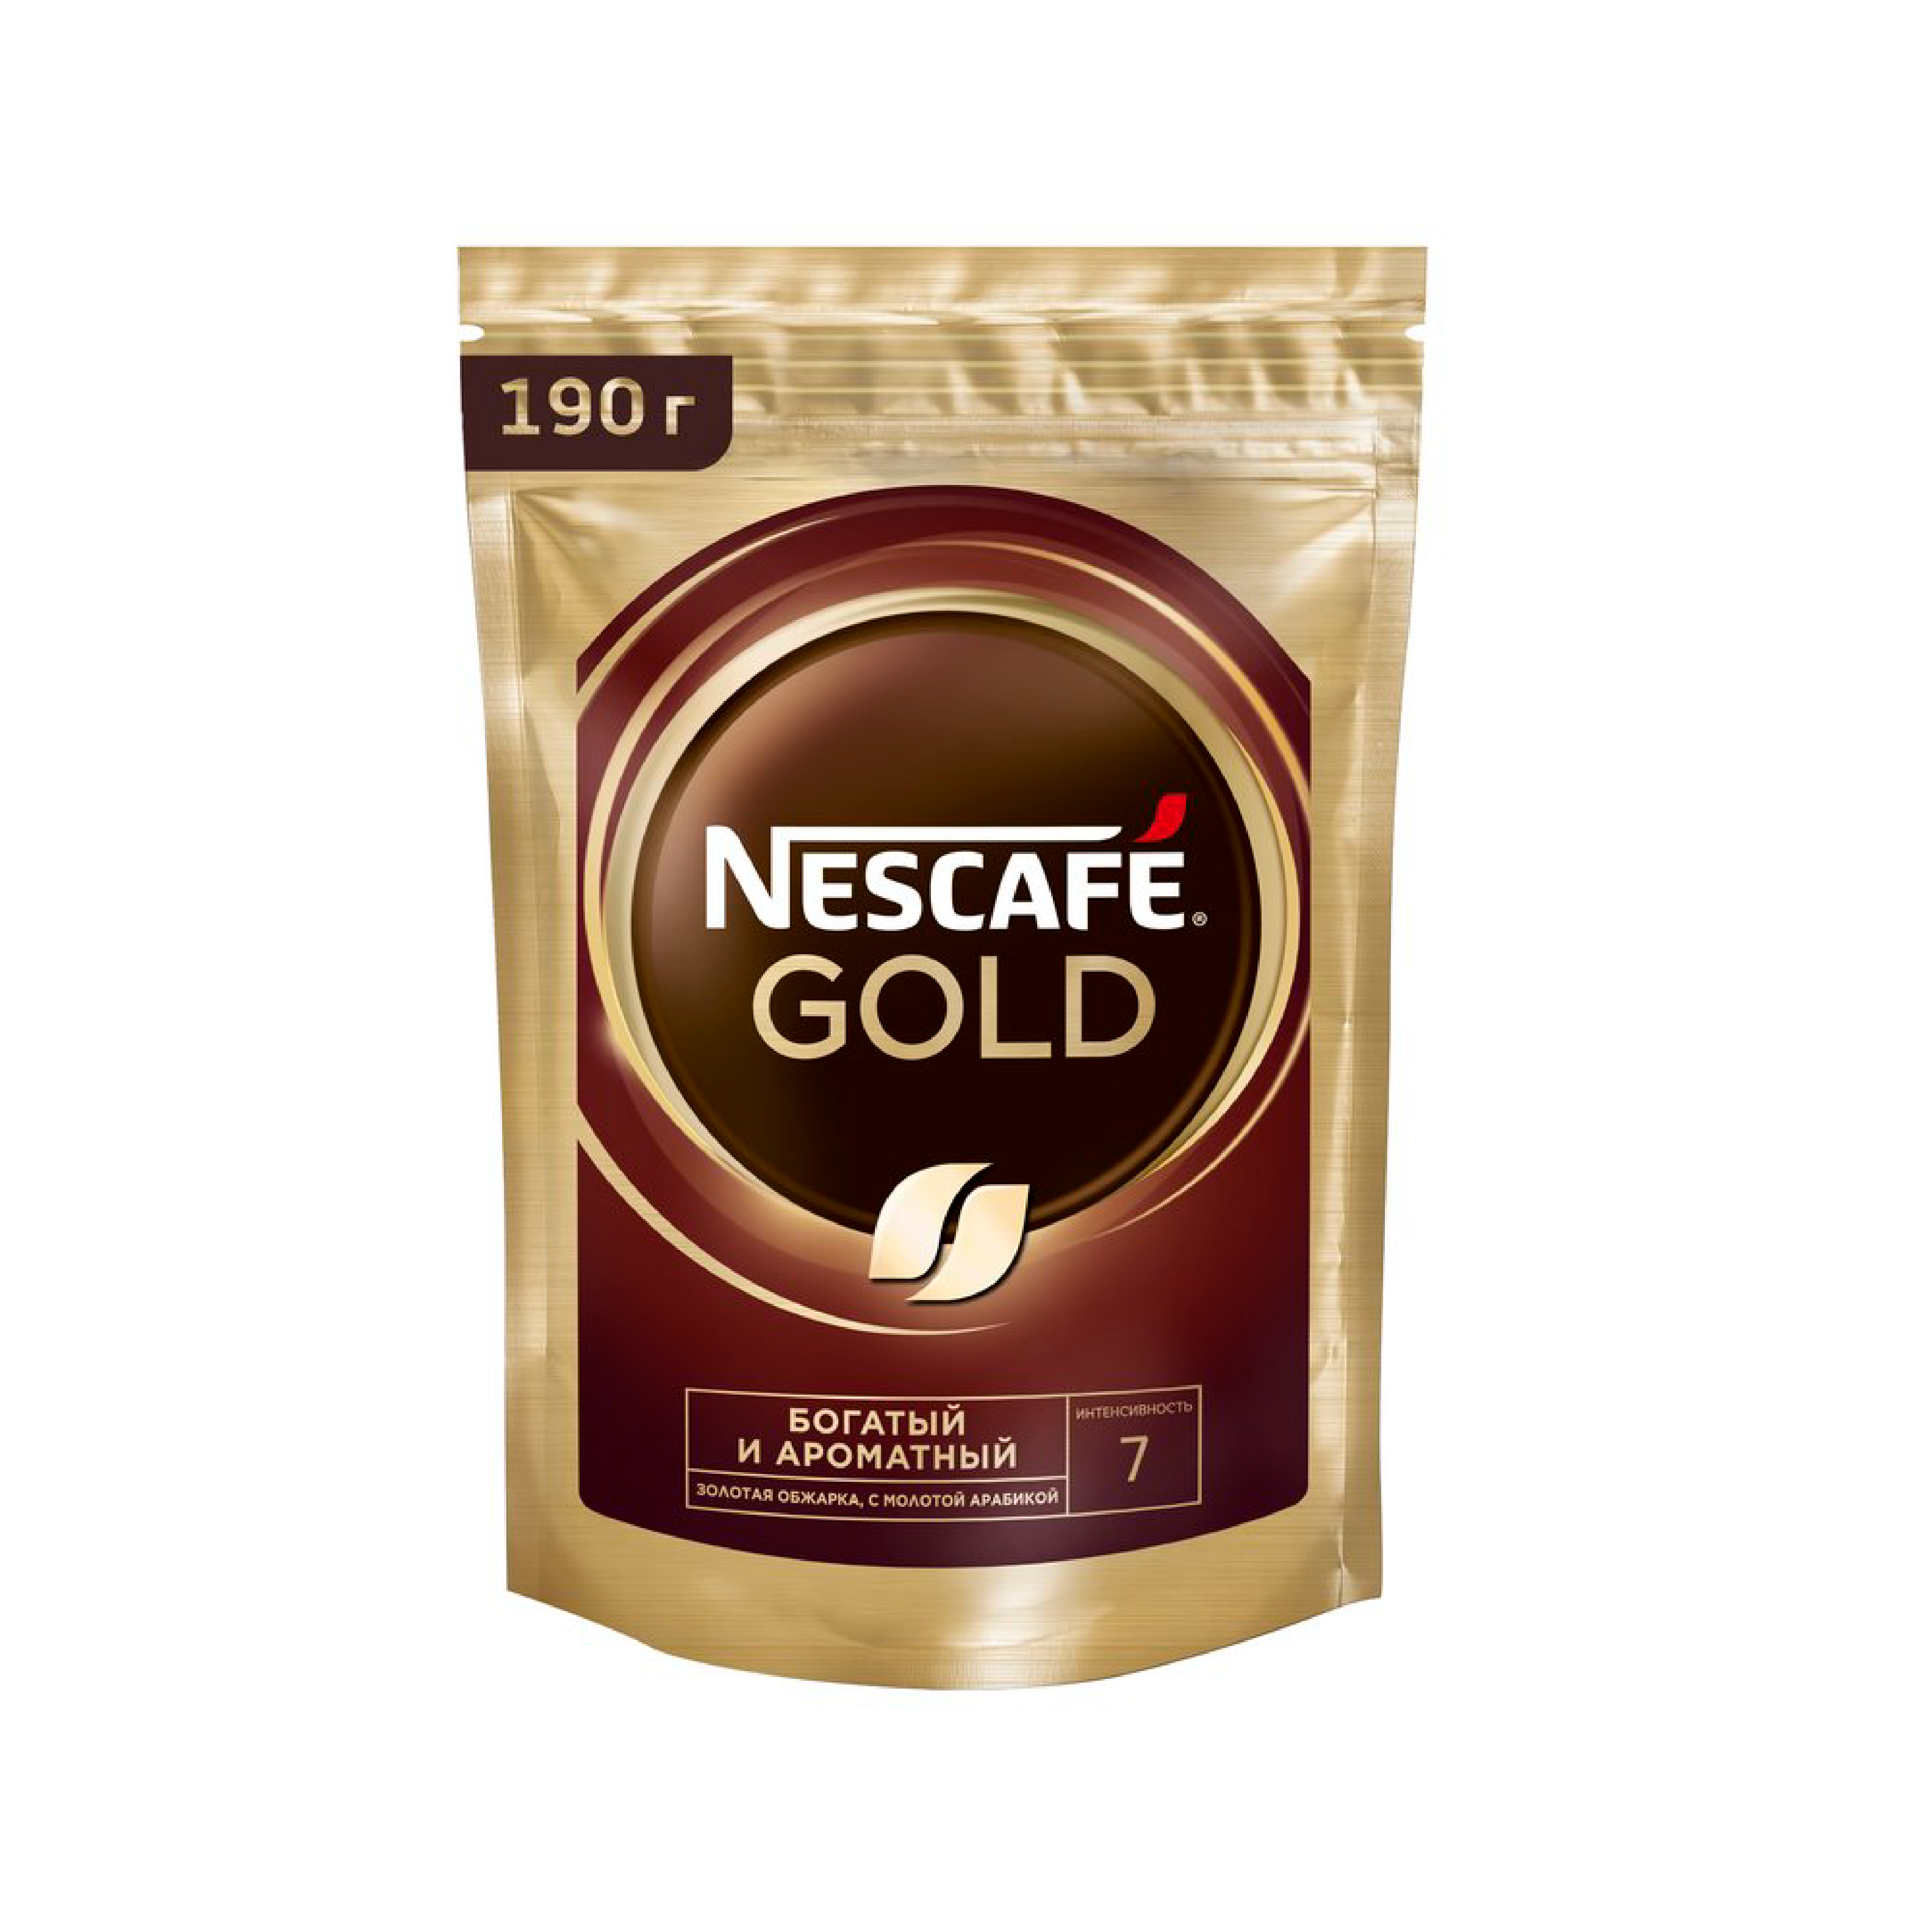 Nescafe gold сублимированный. Кофе Нескафе Голд 900 гр. Nescafe кофе Gold 900г.. Кофе Нескафе Голд 900гр м.у. Кофе растворимый Nescafe Gold 900 гр.